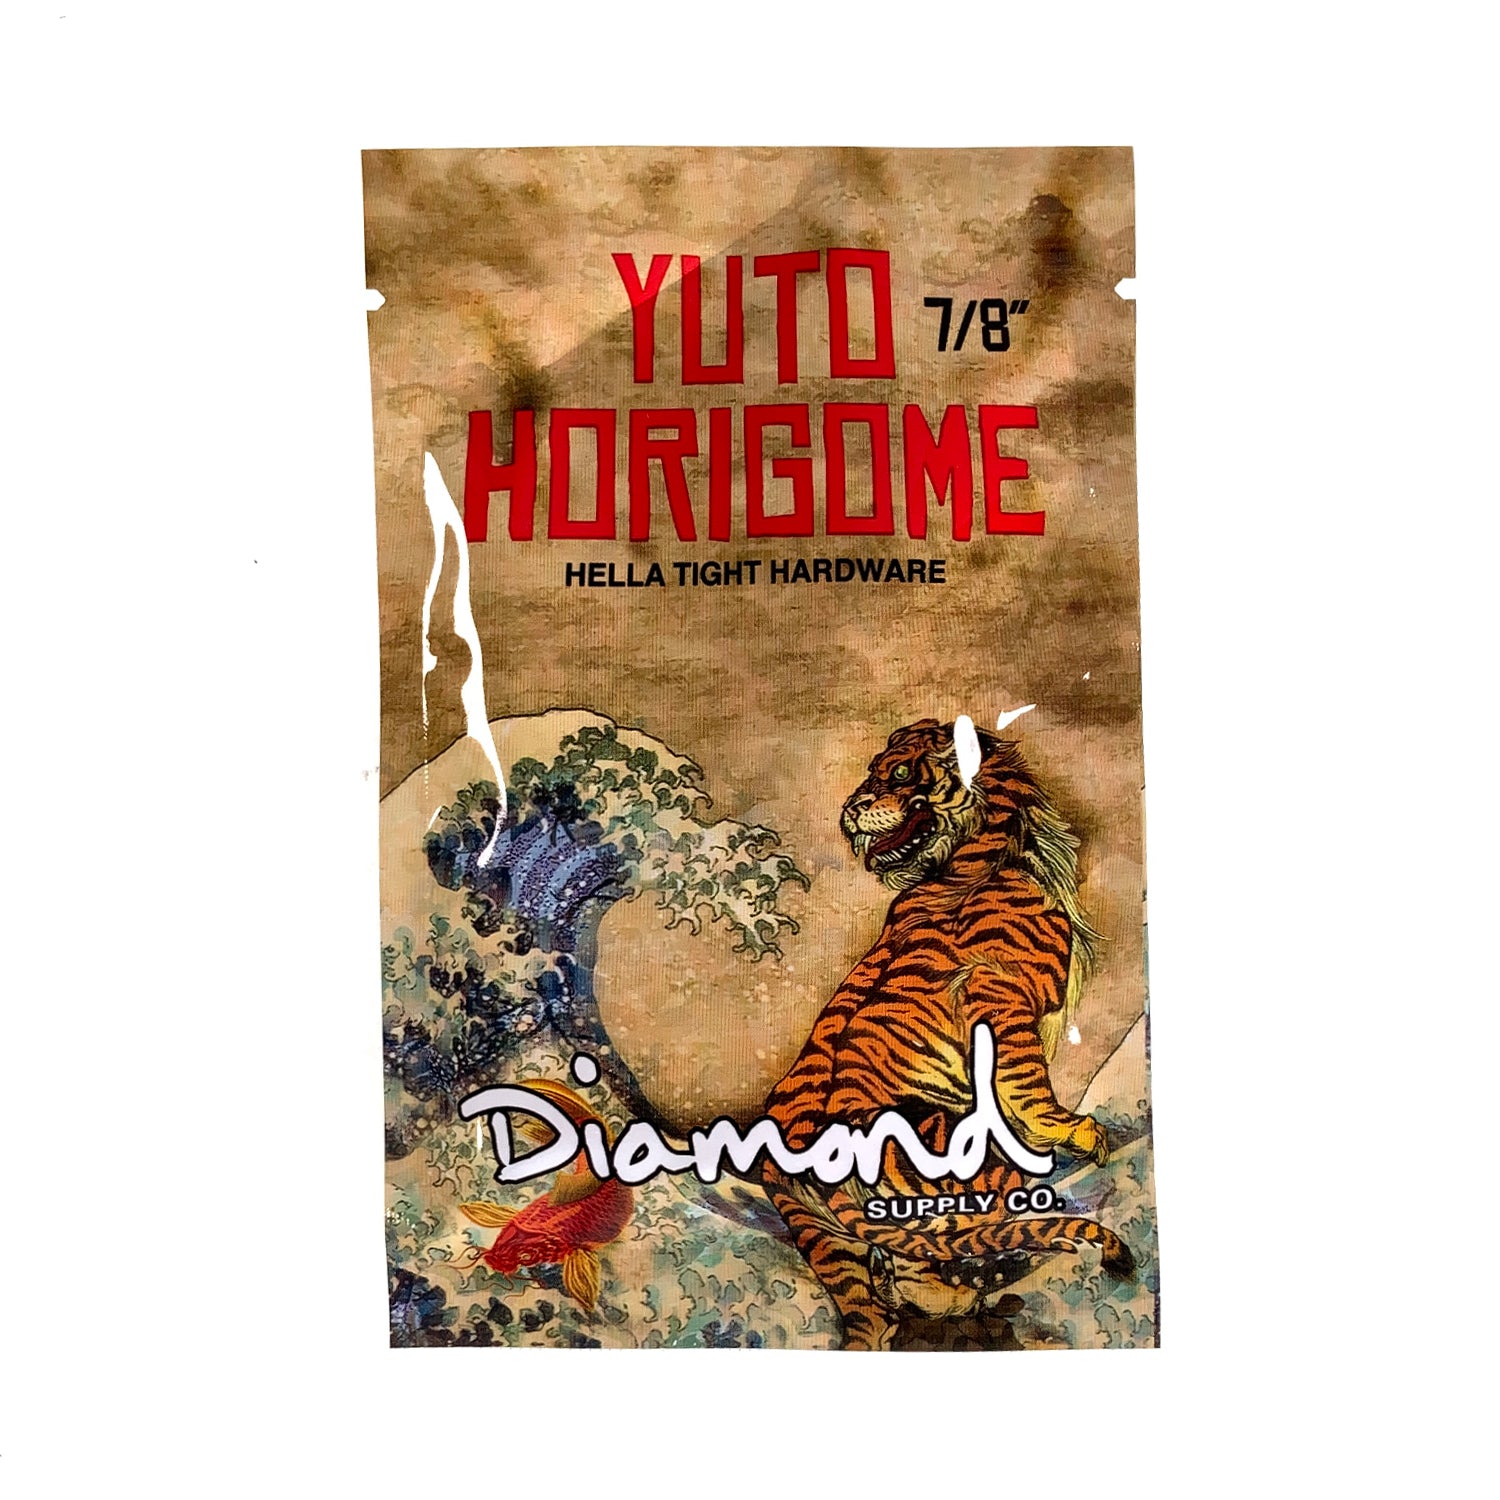 Diamond Supply Co. Yuto Horigome Pro Bolts 7/8" - Prime Delux Store